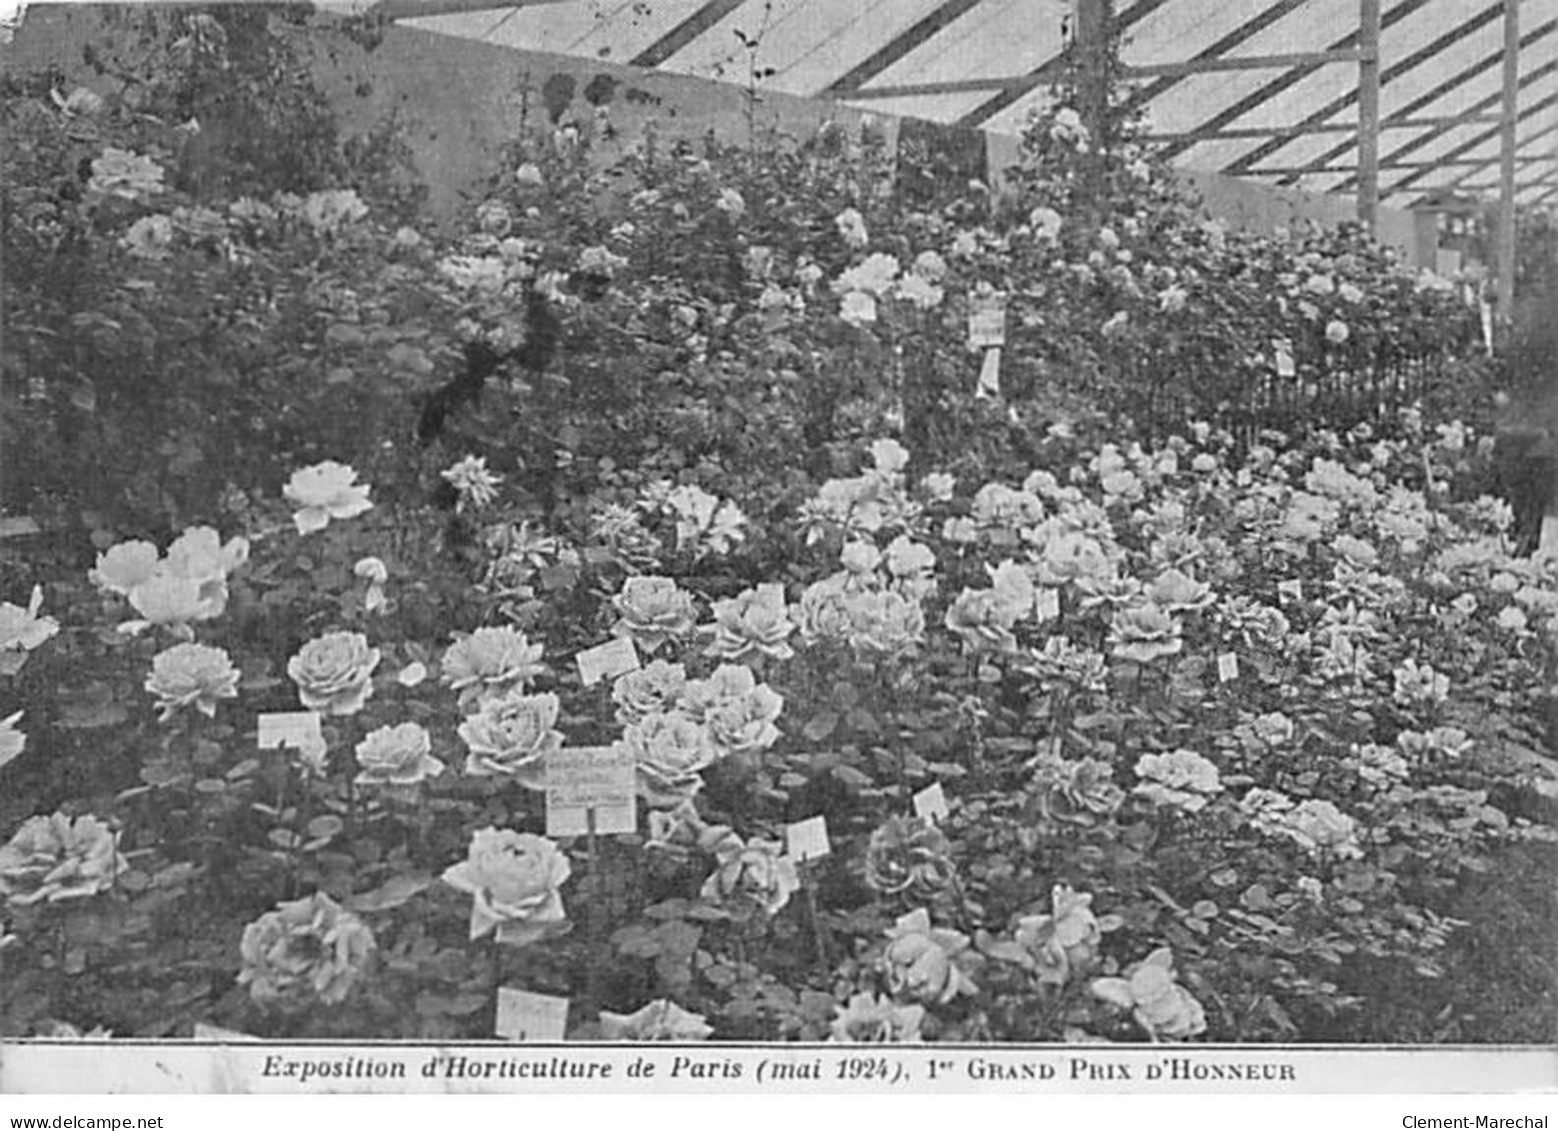 IVRY SUR SEINE - LEVEQUE & FILS Horticulteurs - Exposition D'Horticulture De Paris 1924 - 1er Grand Prix D'Honneu - état - Ivry Sur Seine